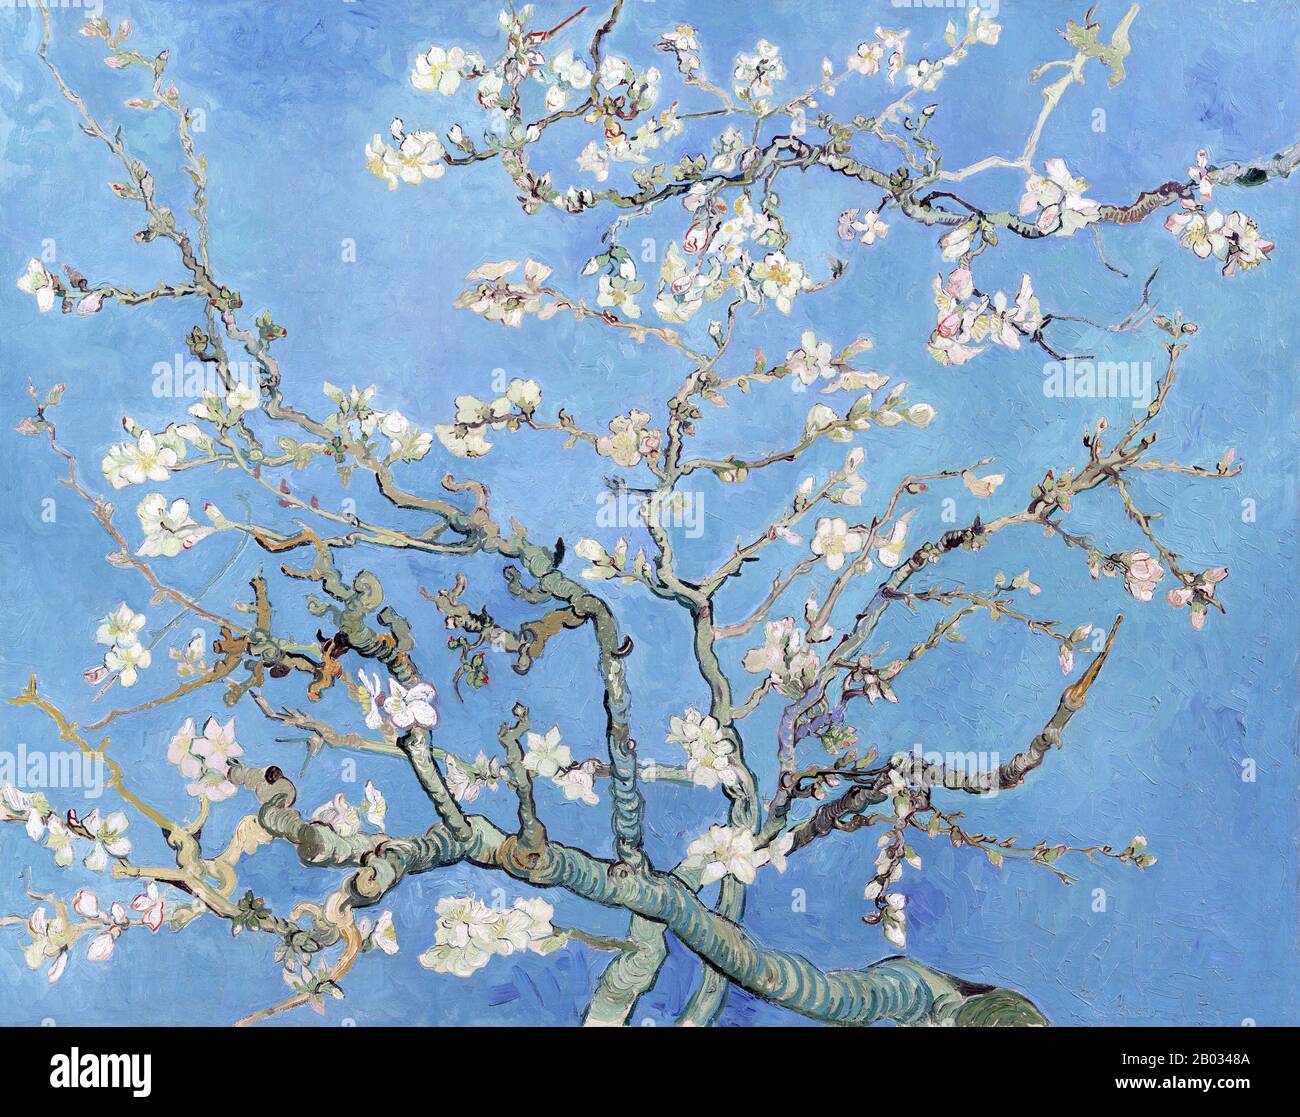 Les fleurs d'amandes proviennent d'un groupe de plusieurs tableaux réalisés en 1888 et 1890 par Vincent van Gogh à Arles et Saint-Rémy, au sud de la France, d'amandiers fleuris. Les arbres fleuris étaient spéciaux pour Van Gogh. Ils représentaient l'éveil et l'espoir. Il les aimait esthétiquement et trouva de la joie dans la peinture des arbres fleuris. Les œuvres reflètent les influences impressionnistes, visionnistes et japonaises de la coupe du bois. Banque D'Images